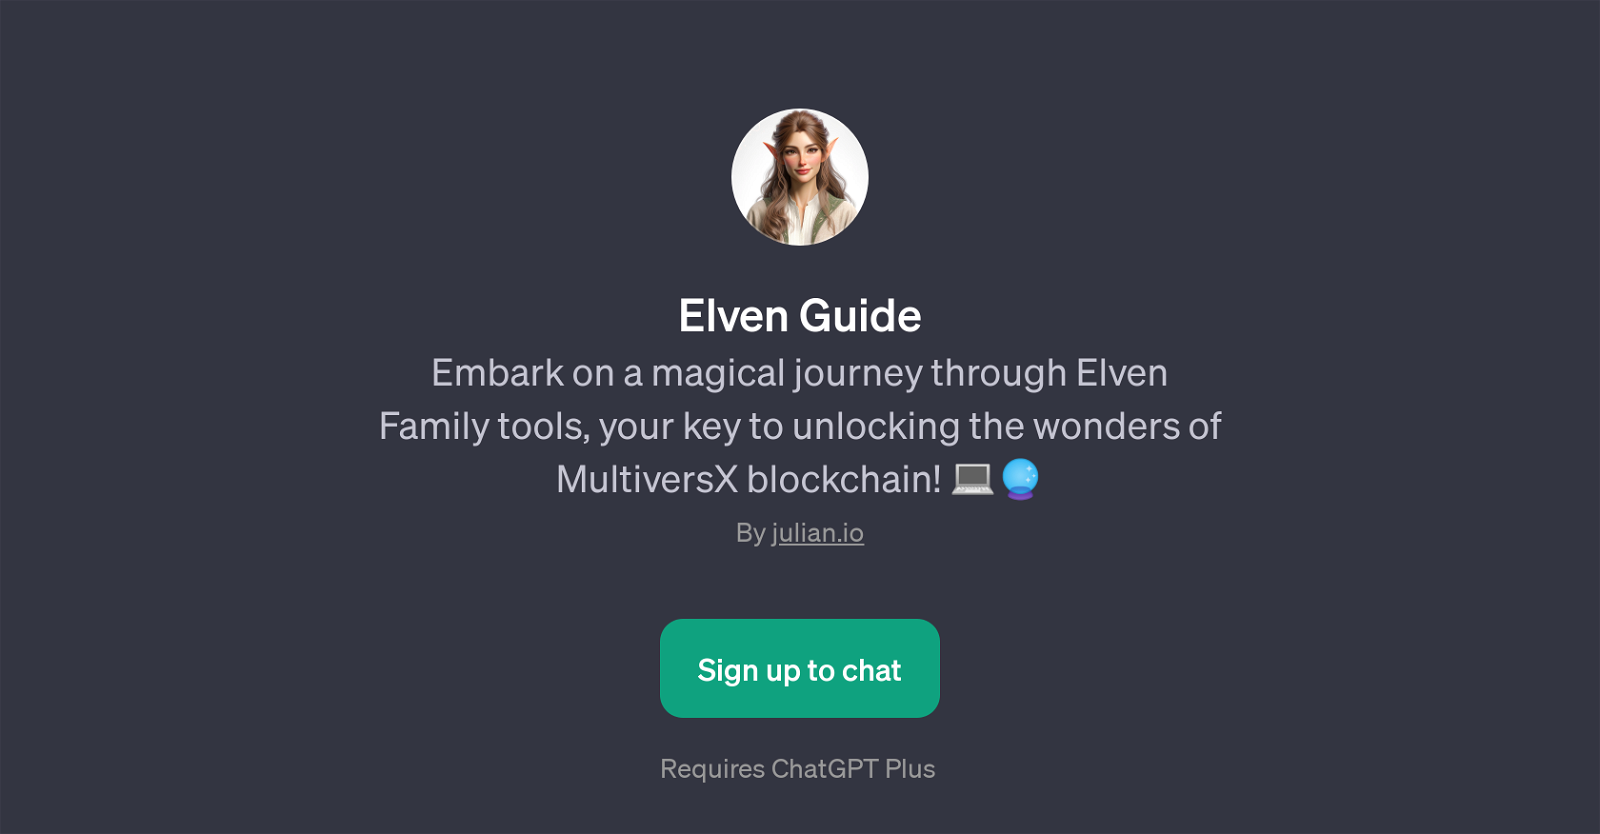 Elven Guide website